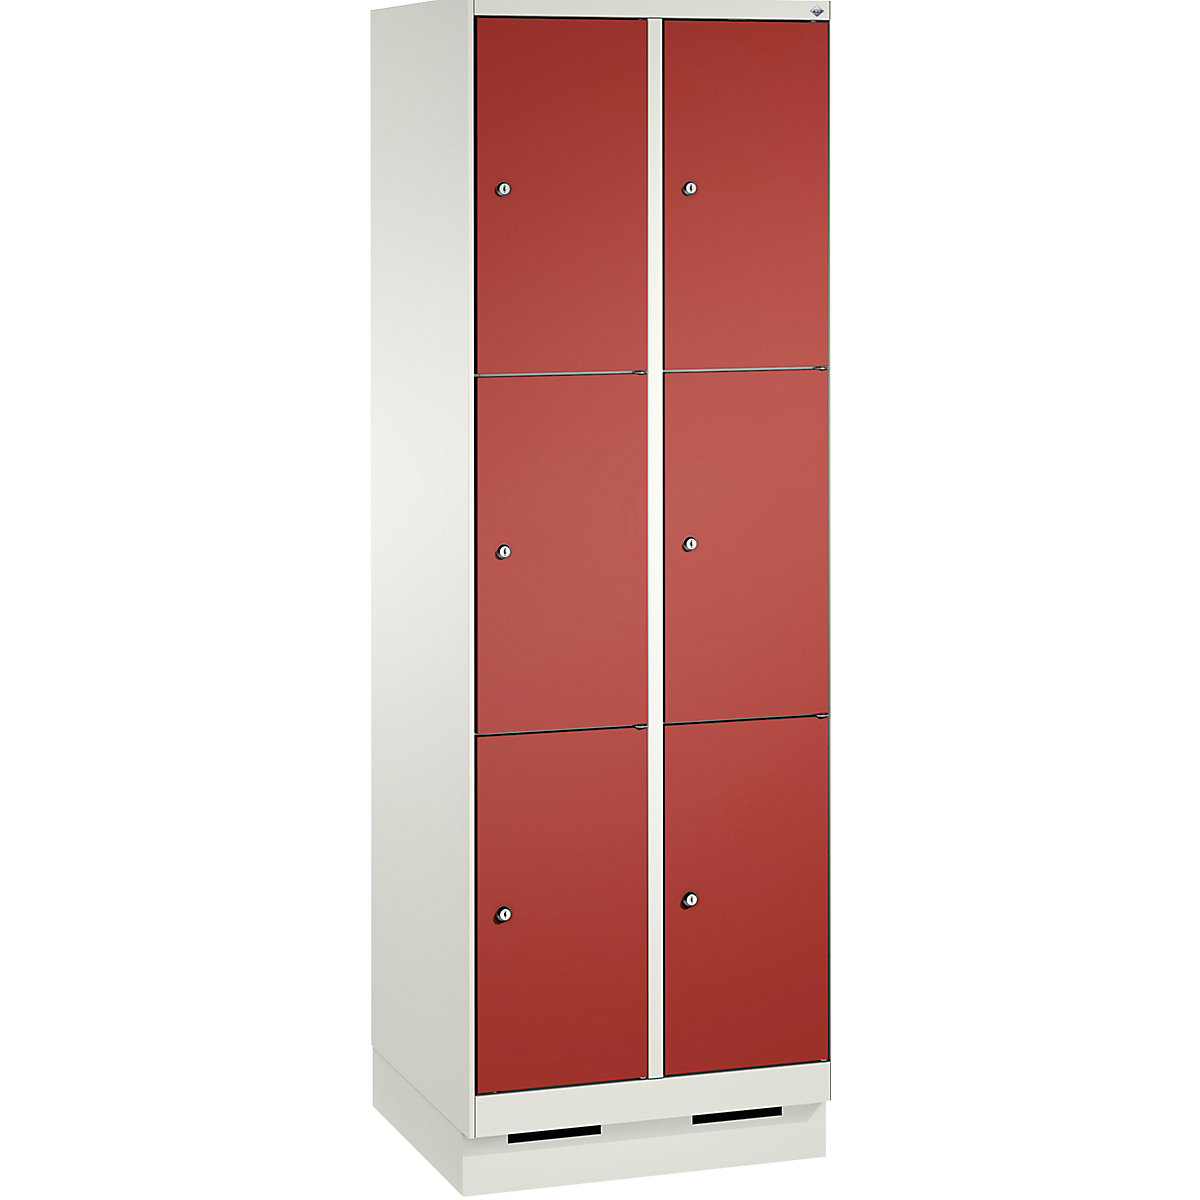 Armoire à casiers sur socle EVOLO – C+P, 2 compartiments, 3 casiers chacun, largeur compartiments 300 mm, blanc trafic / rouge feu-6